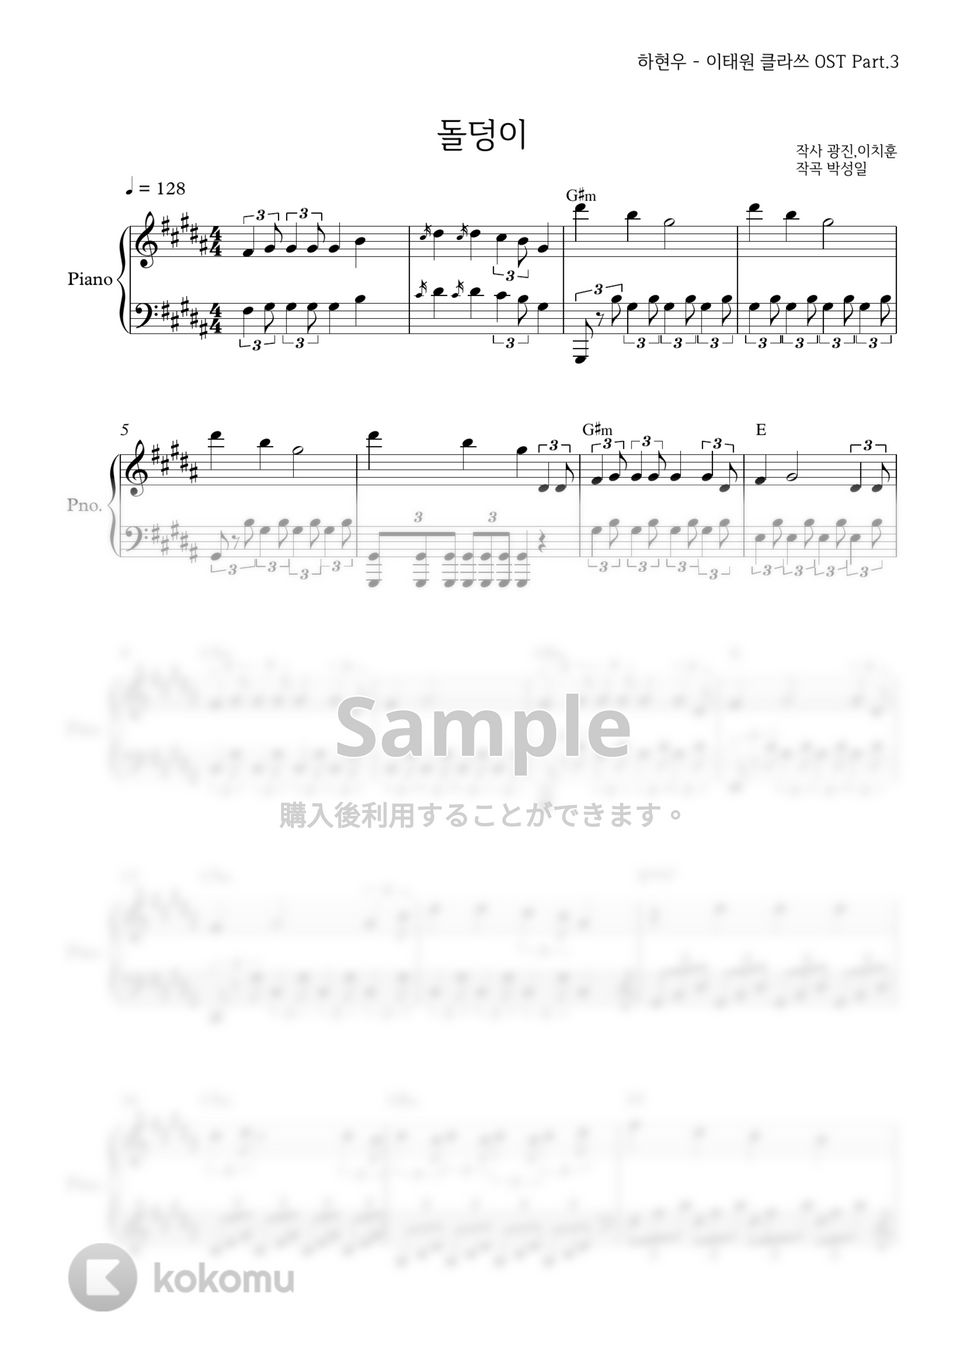 ハ・ヒョヌ(梨泰院クラス OST) - 石ころ by PIANOiNU